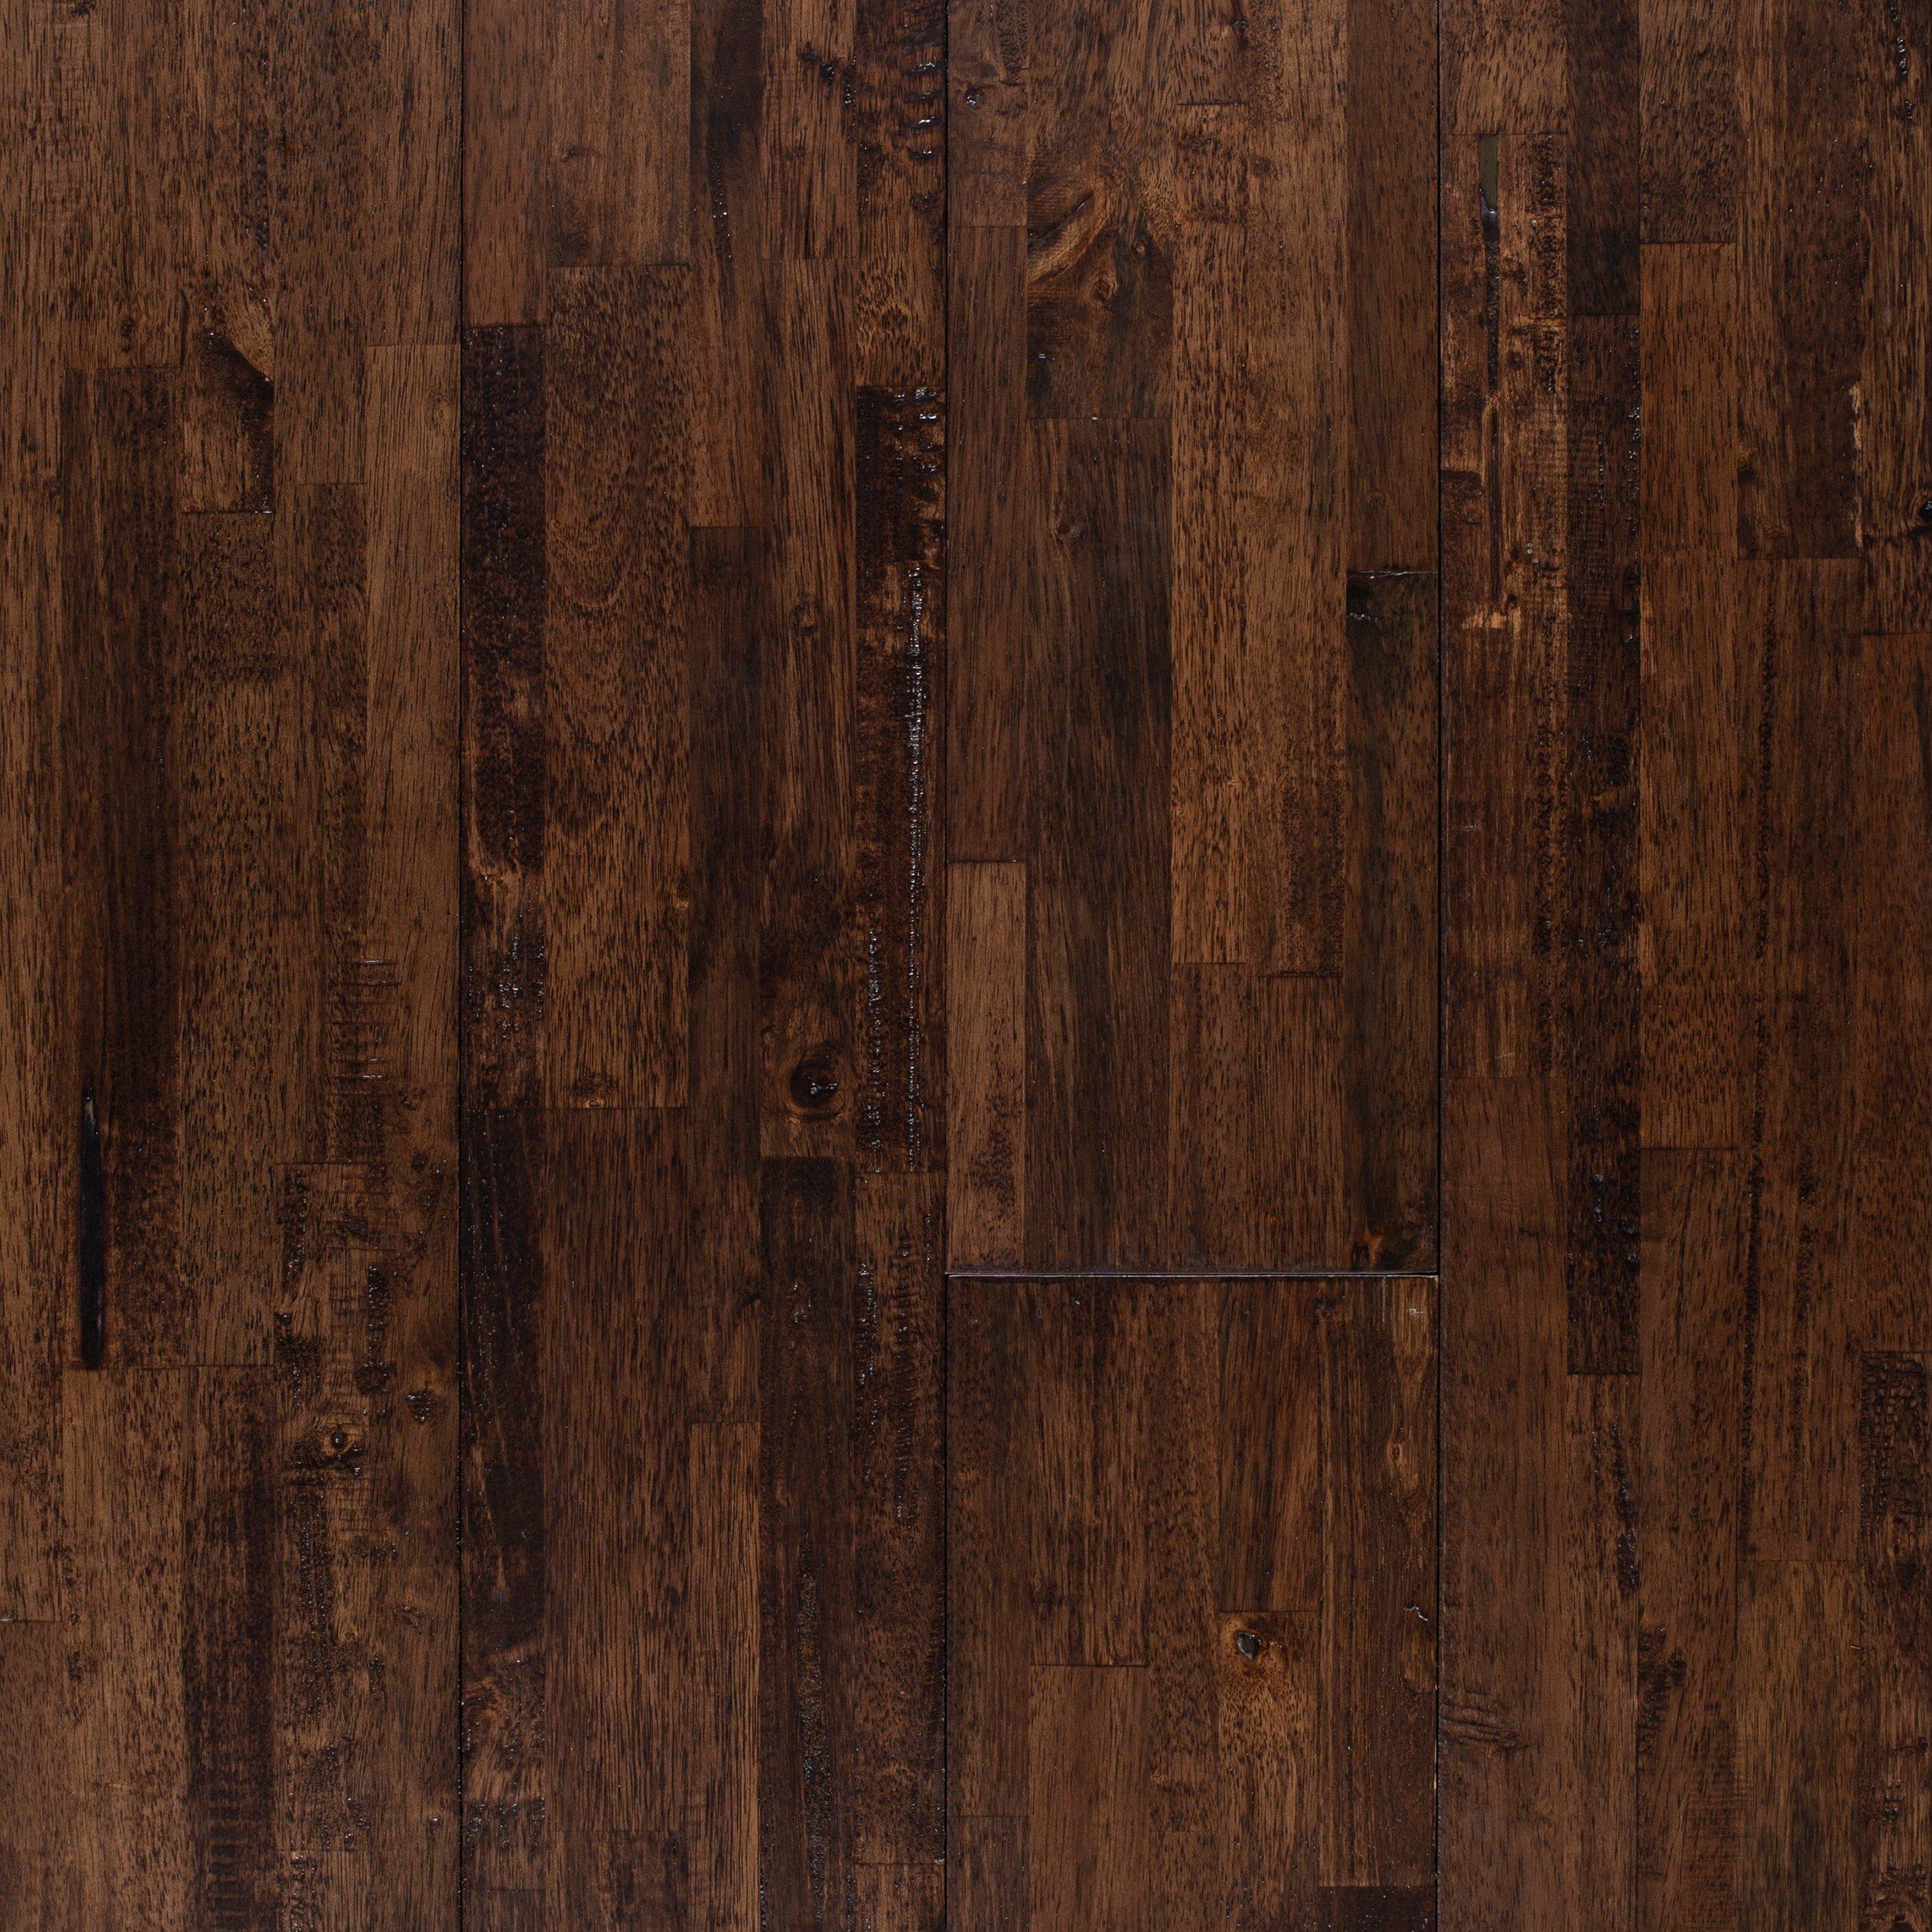 Hevea Truva Distressed Solid Hardwood, Distressed Solid Hardwood Flooring